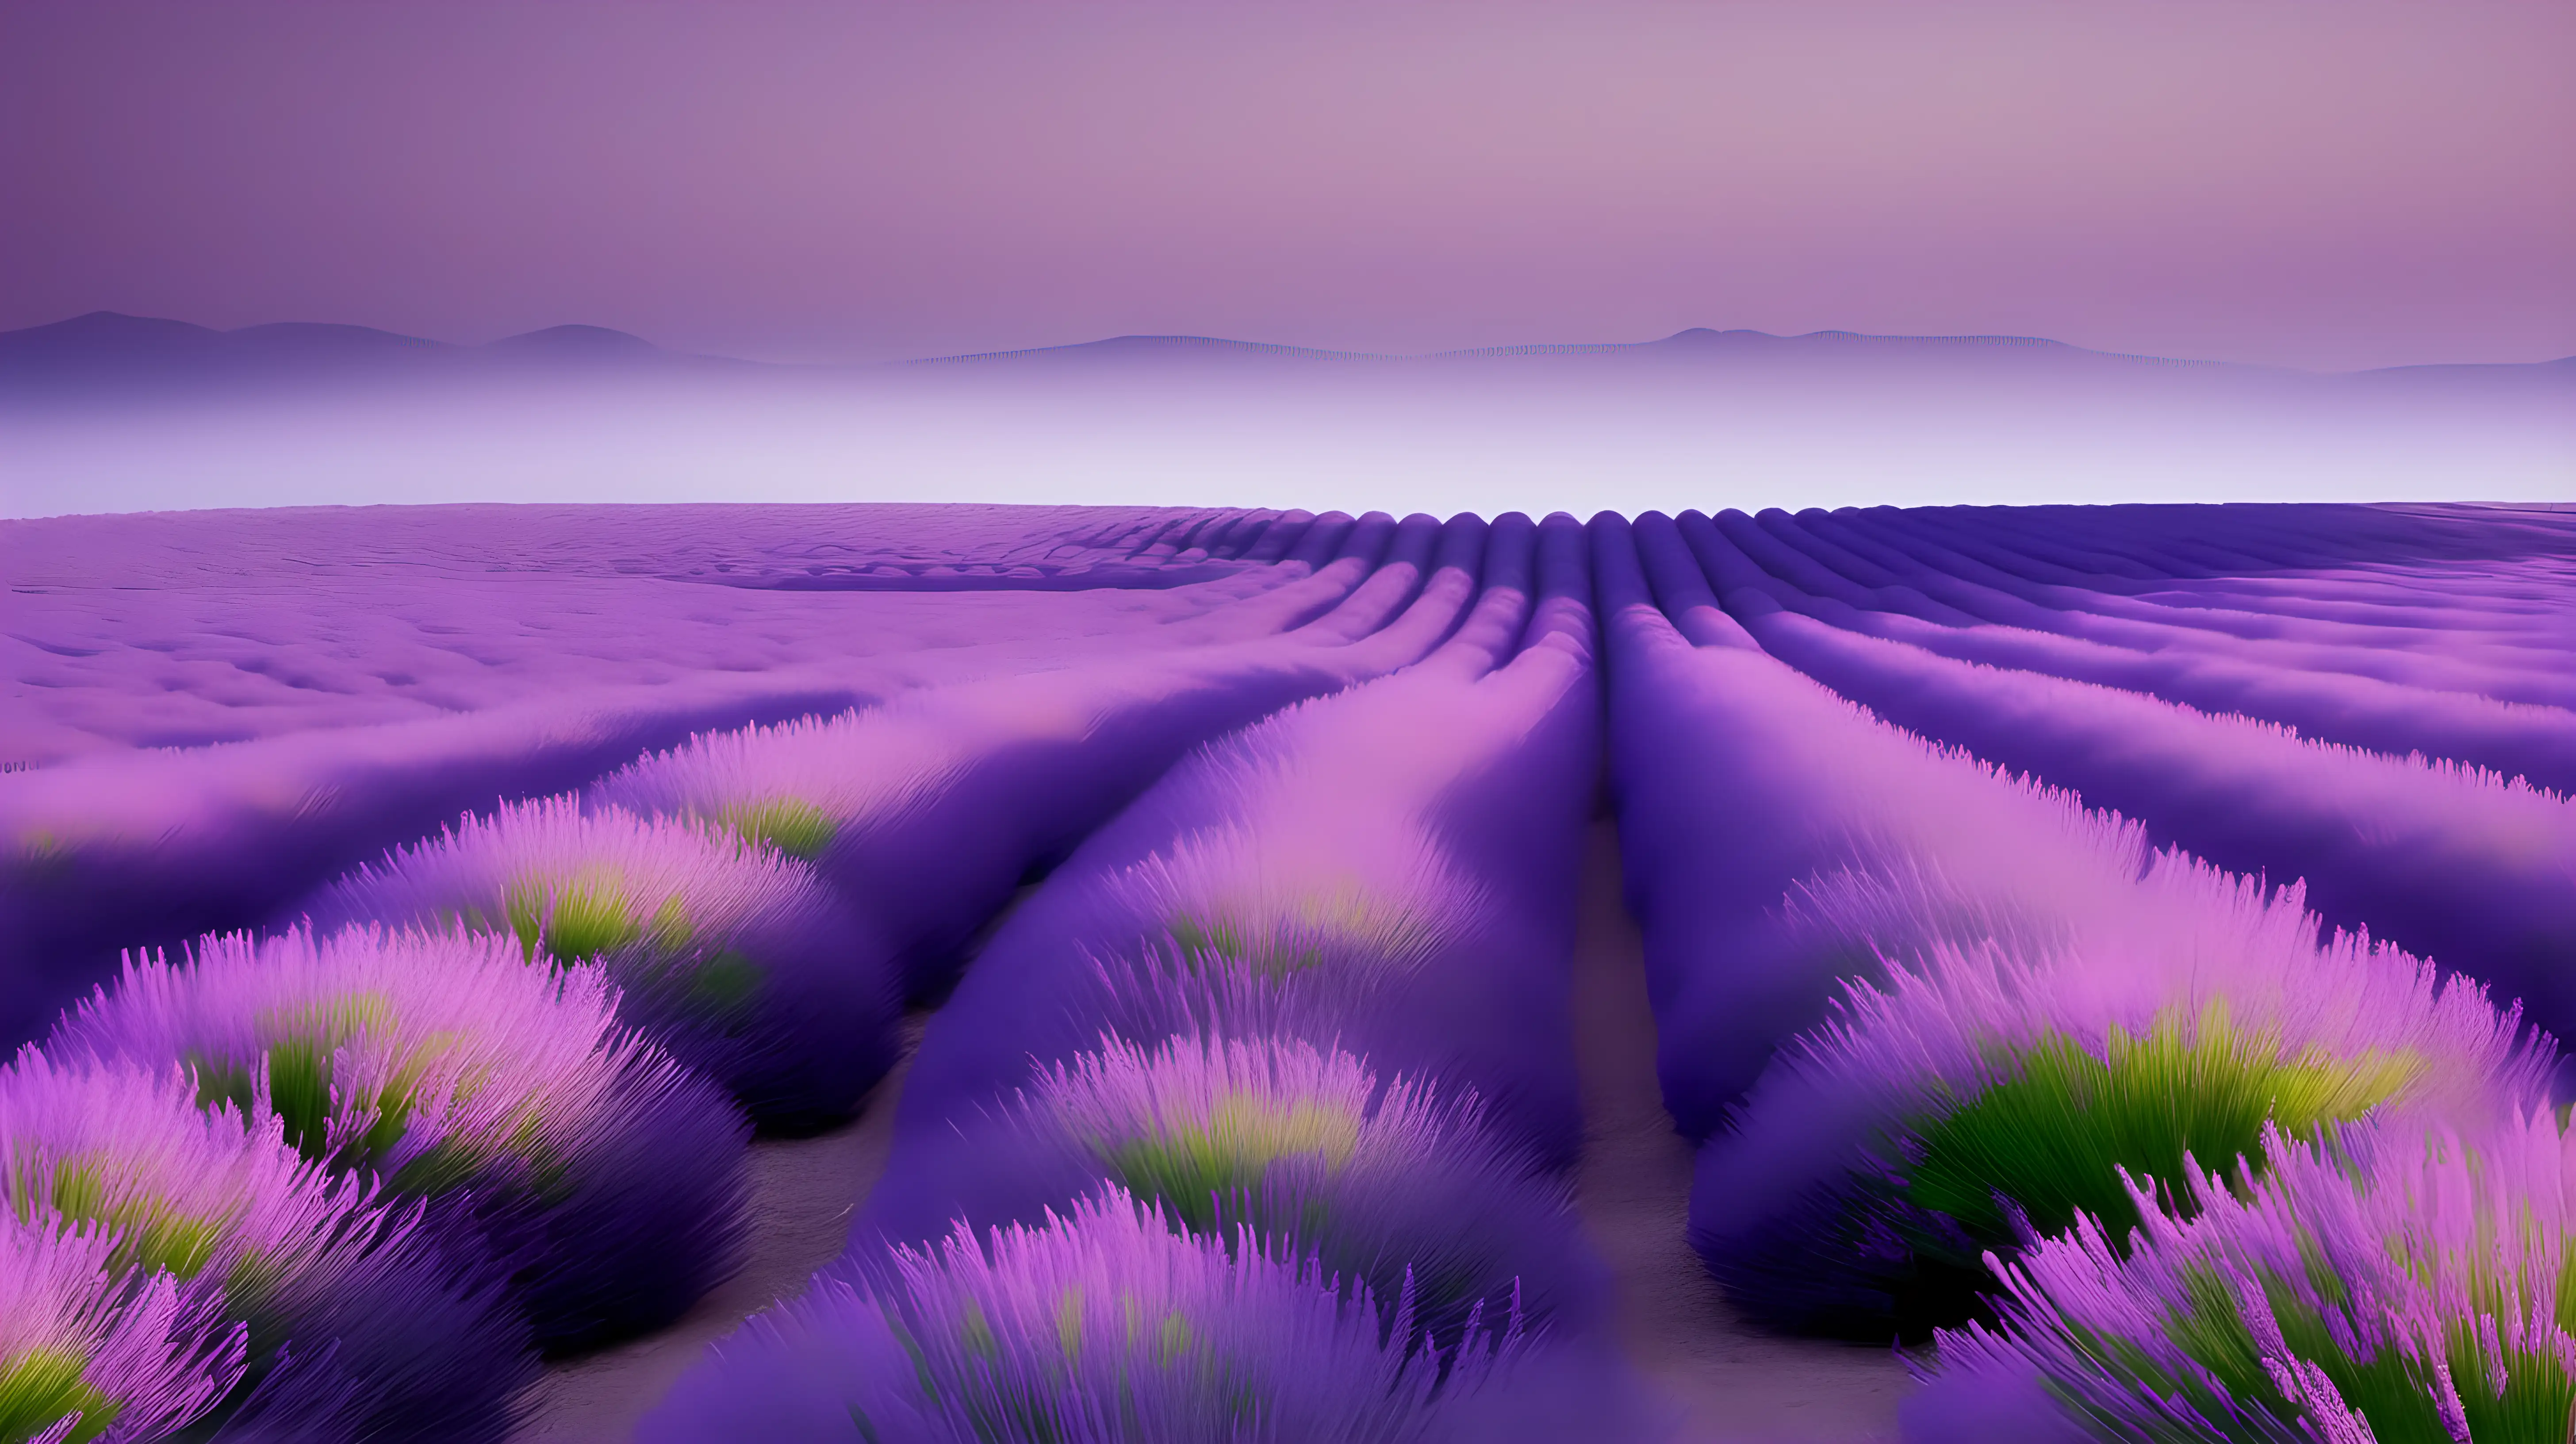 Serene Lavender Scene with Delicate Mauve Accents